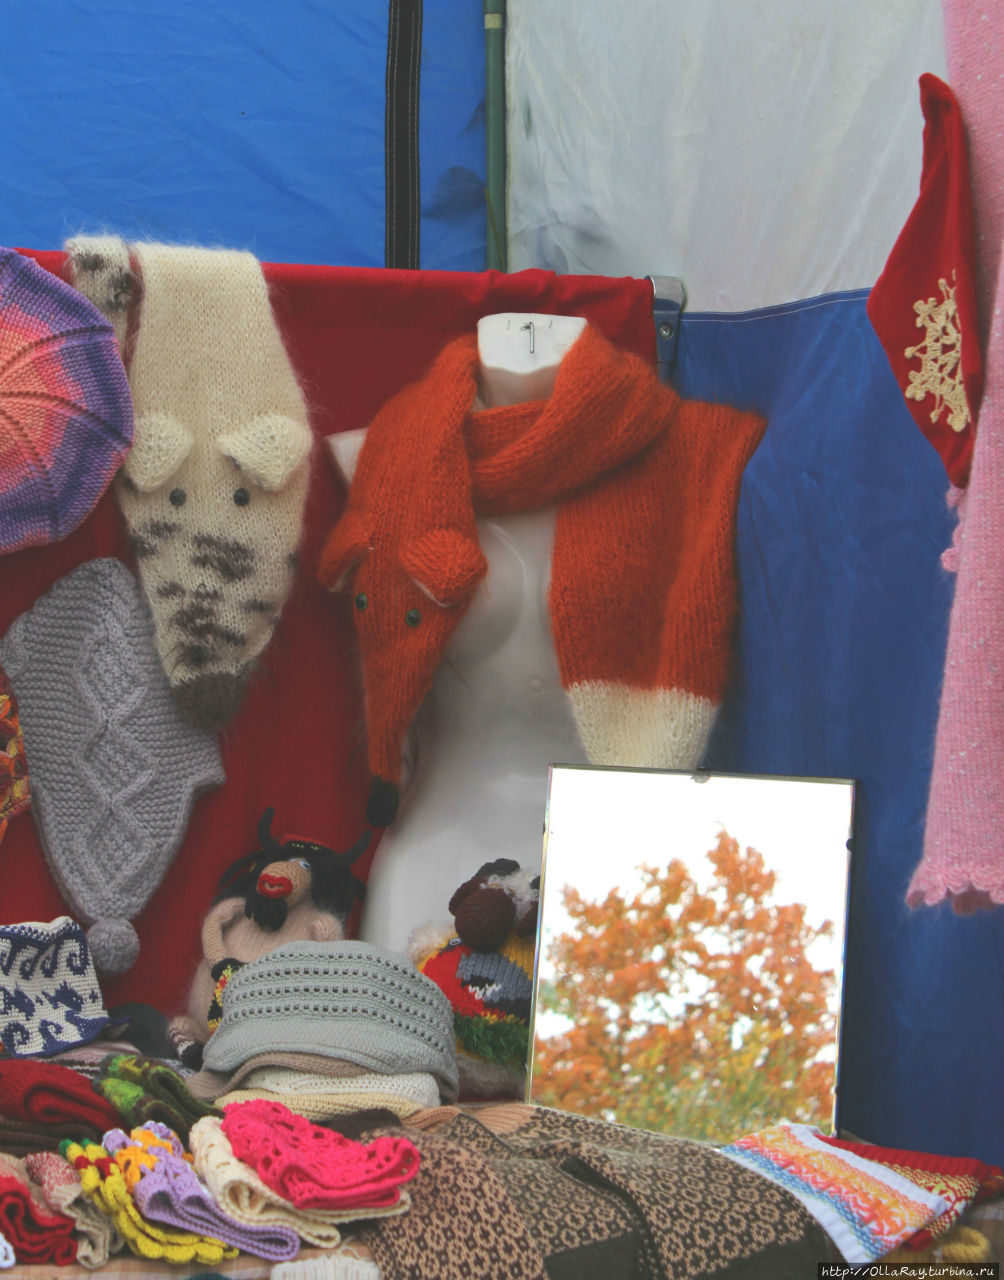 Иногда на ярмарках встречаются забавные  вещицы. Например, вот такой мохеровый шарф в виде лисицы:) Петрозаводск, Россия